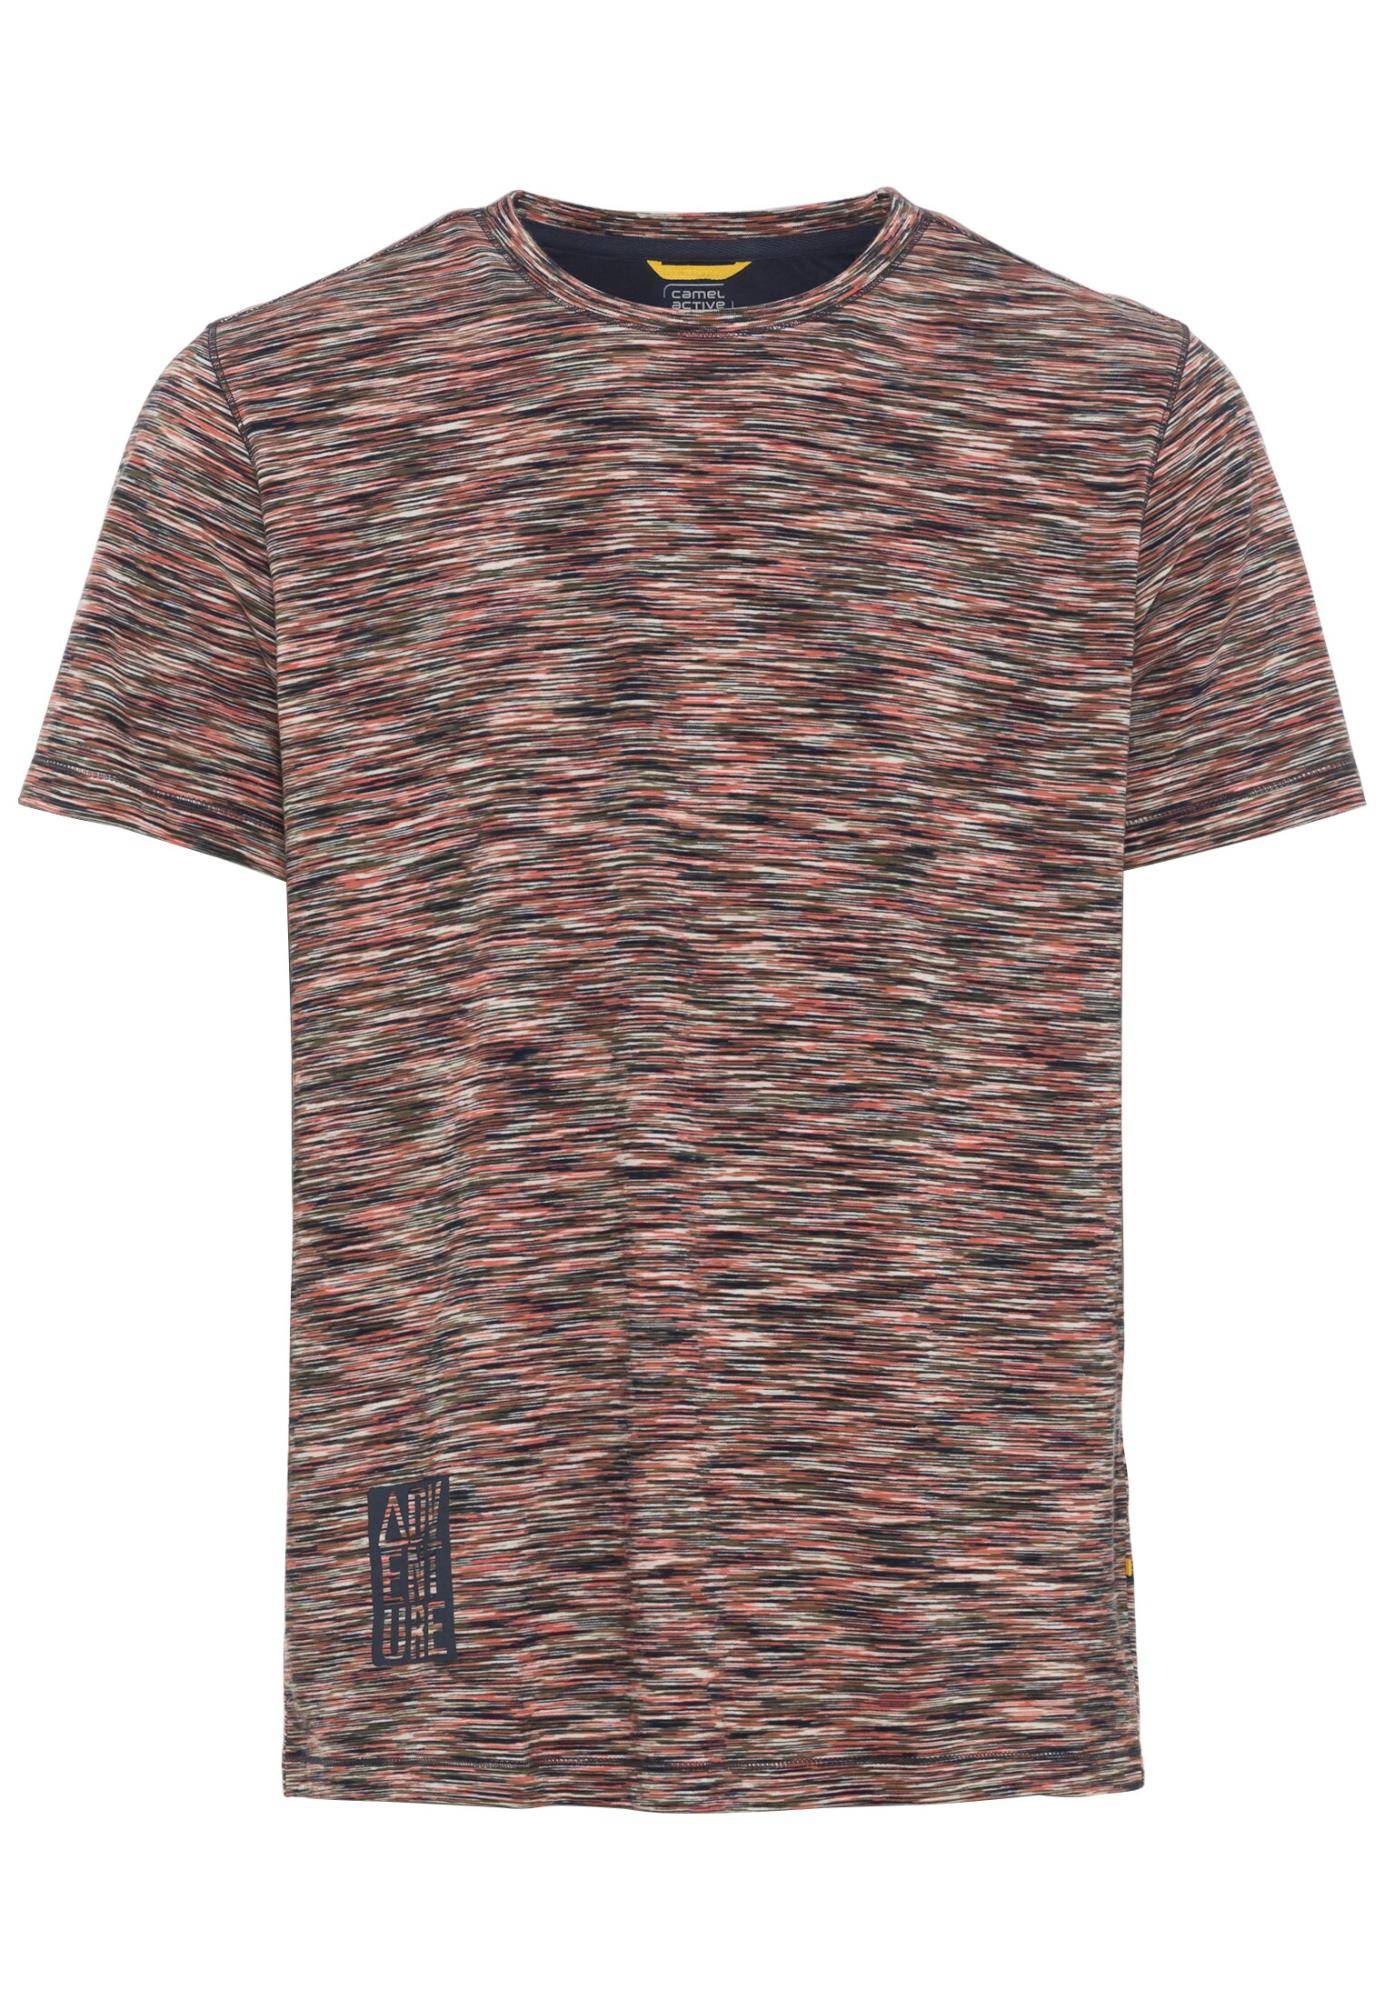 Мужская футболка Camel Active, коралловая, цвет коралловый, размер 46 - фото 1